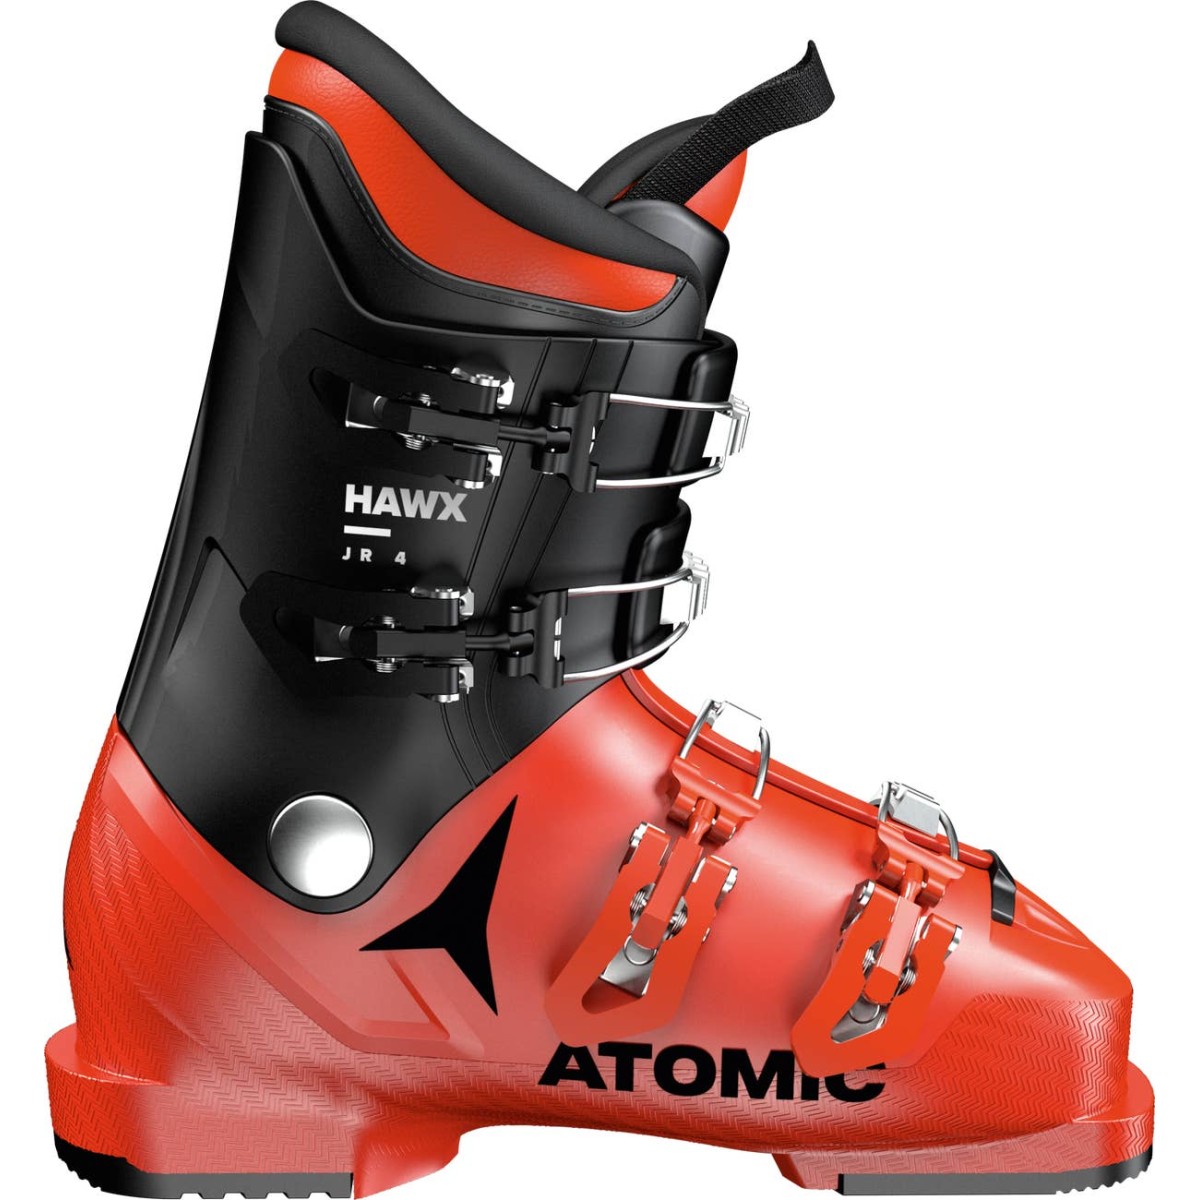 ATOMIC HAWX JR 4 alpine ski boots - red/black